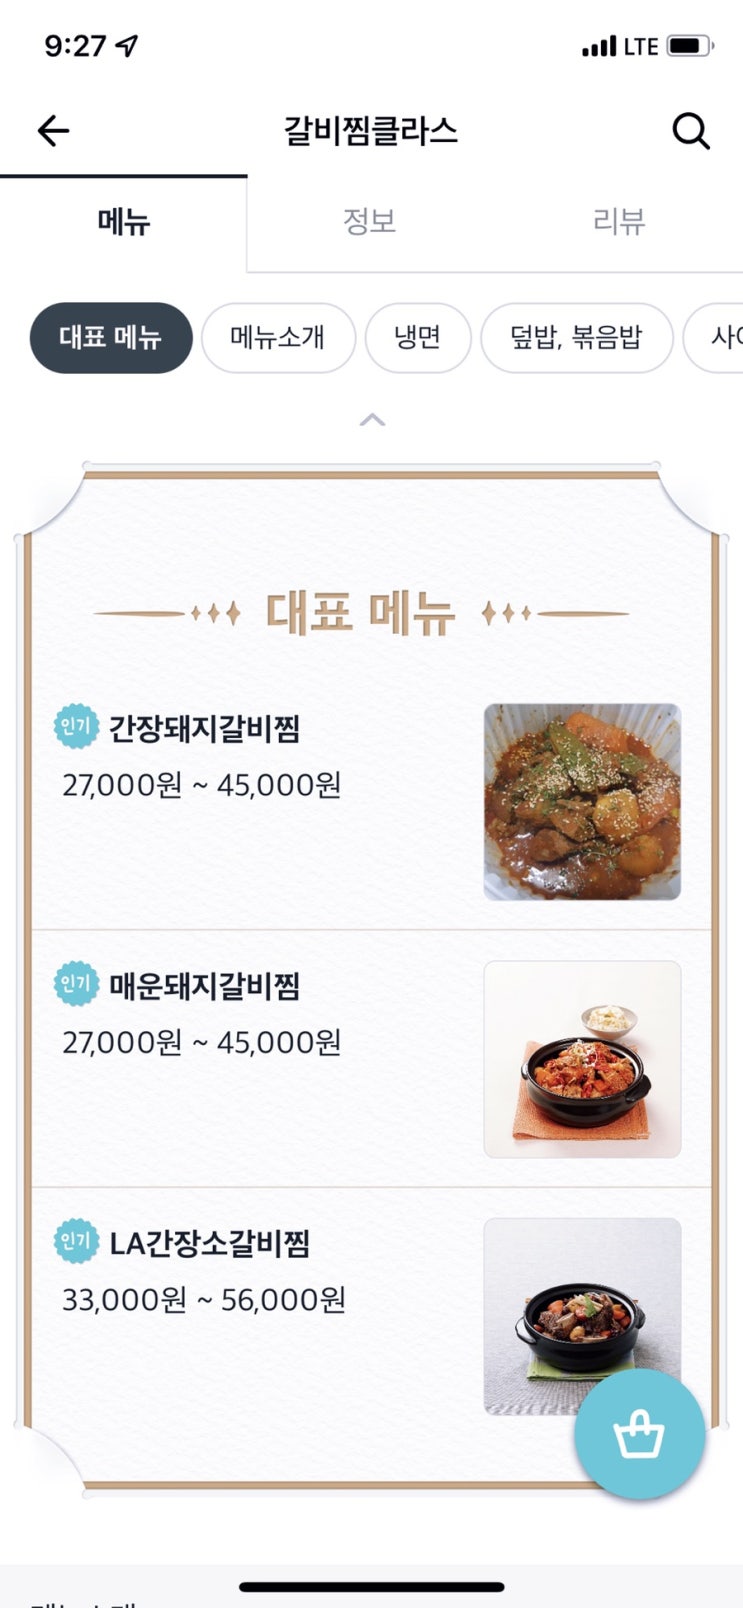 인천 배달 가게 / 지인 가게 “혼밥혁명” 오픈! 한식 좋아하면 “갈비찜클라스”!